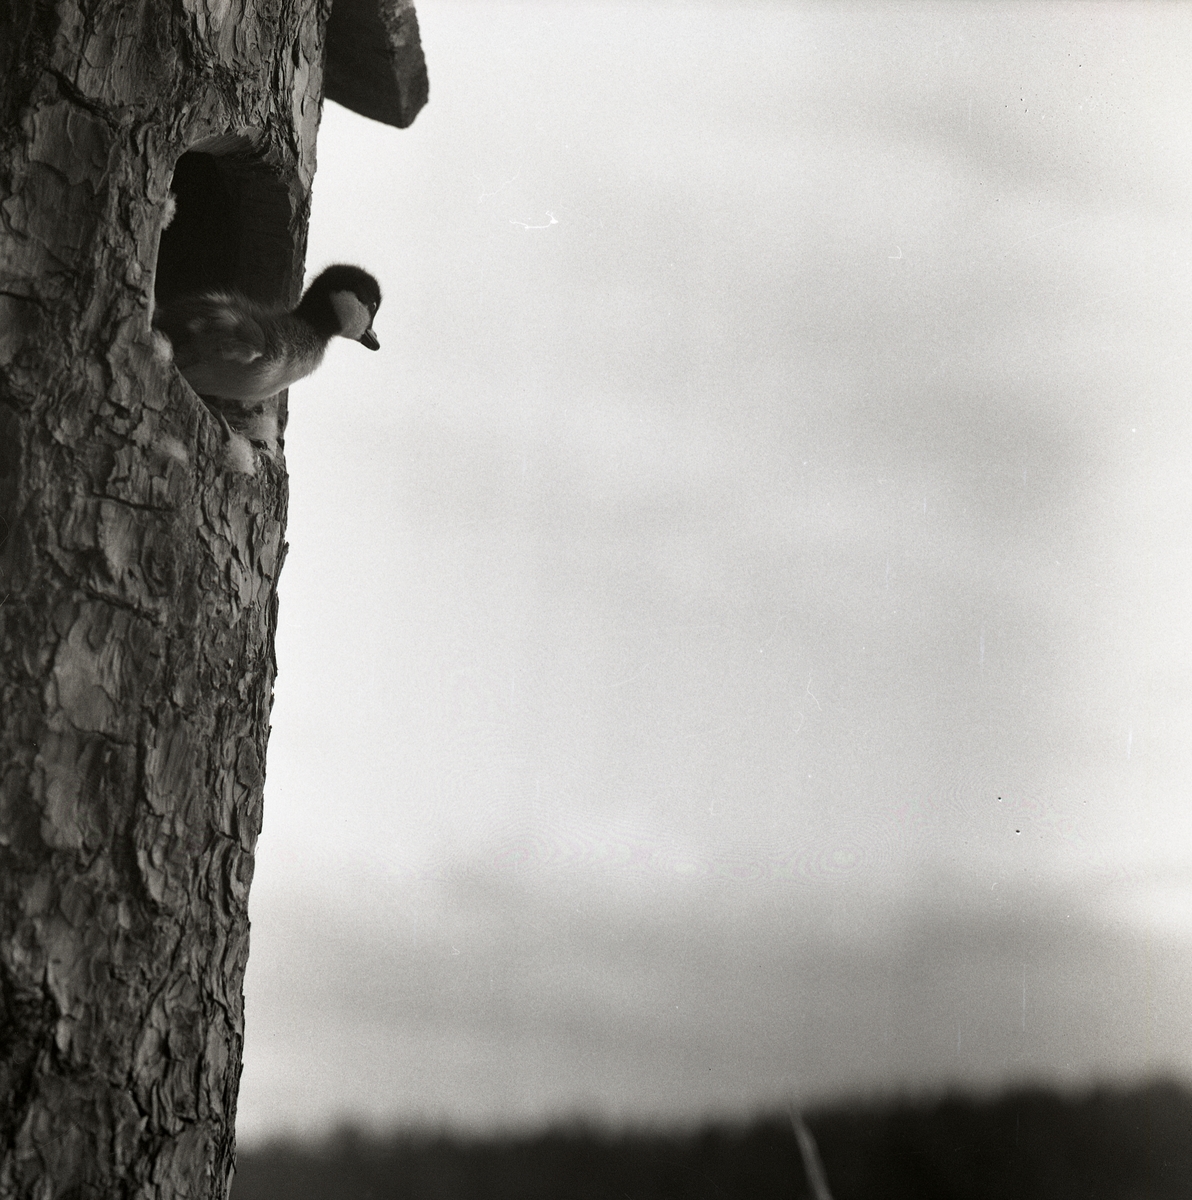 En knipunge står i en fågelholksöppning och kikar ut, Skidtjärn den 1 juni 1960.